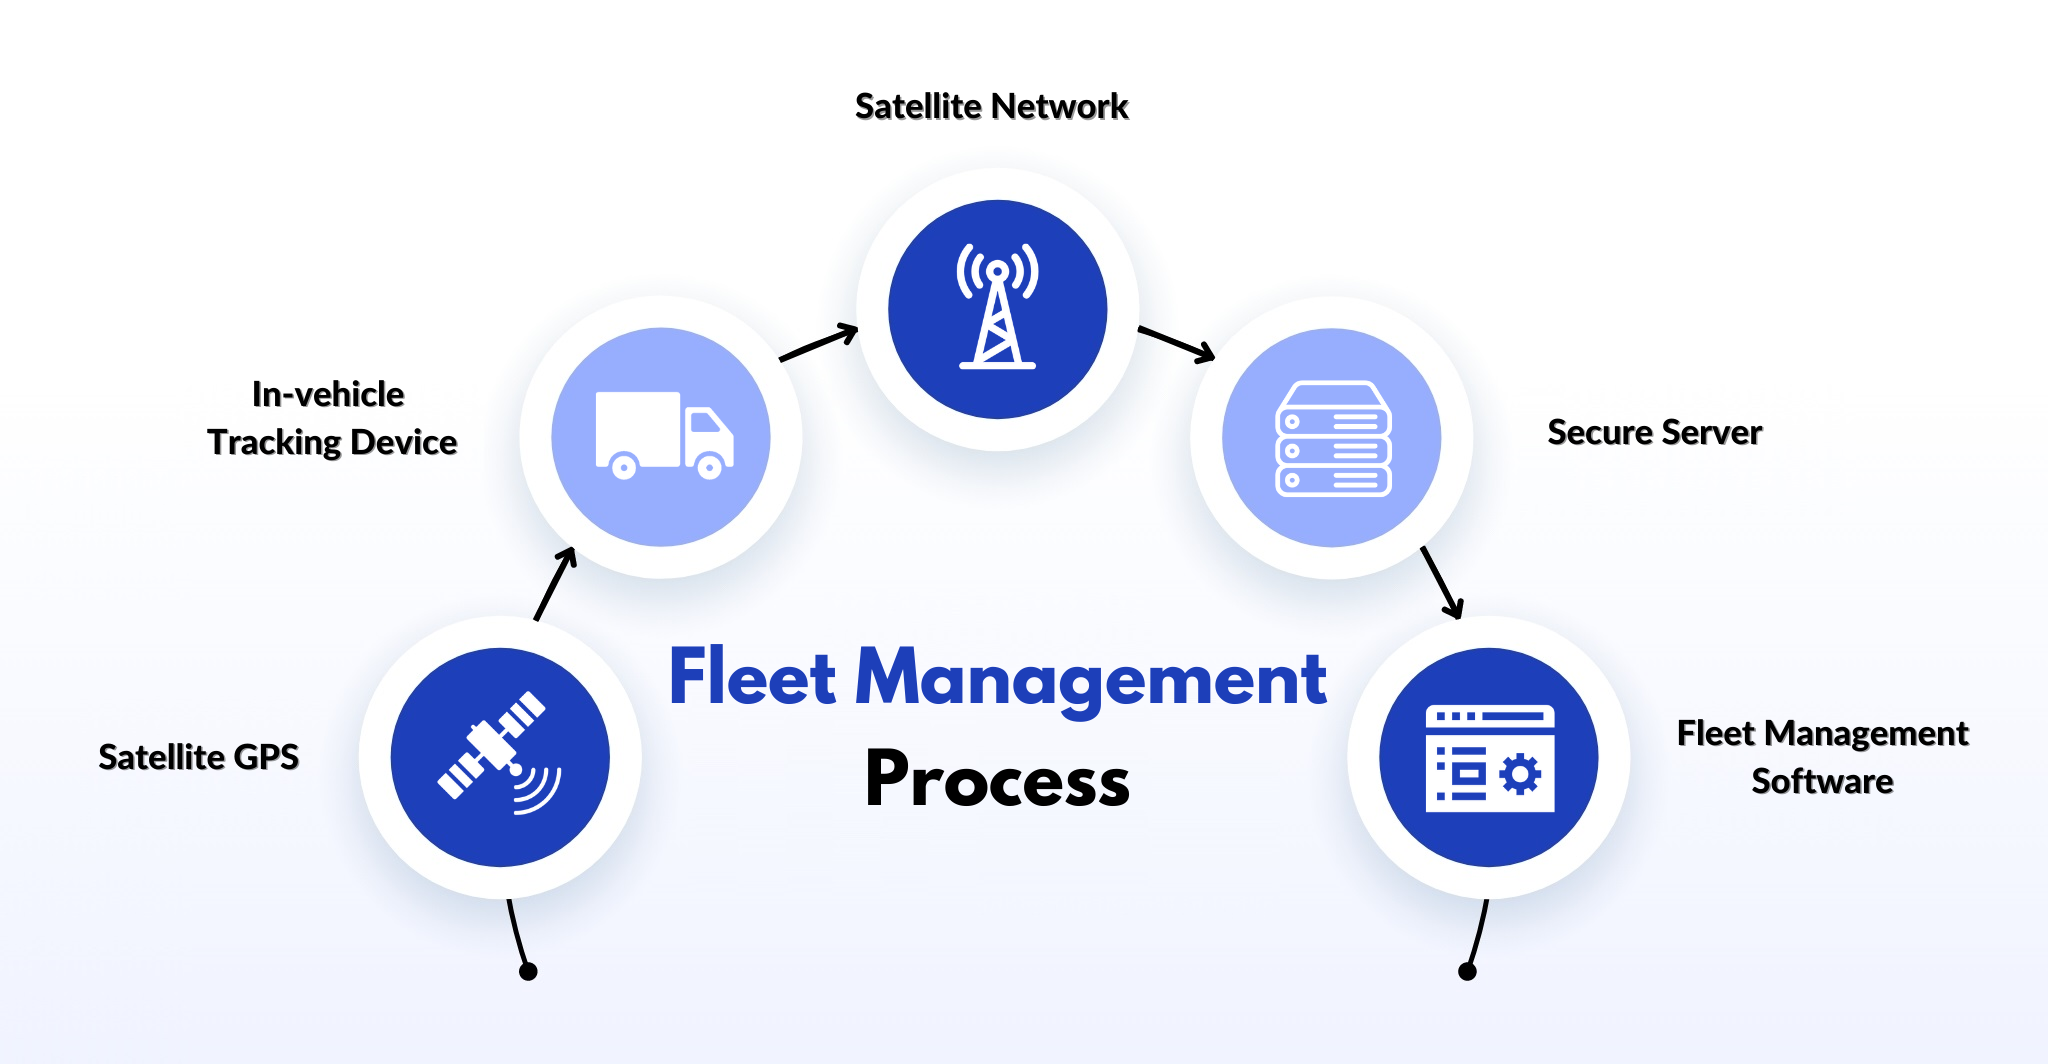 Fleet Management Process